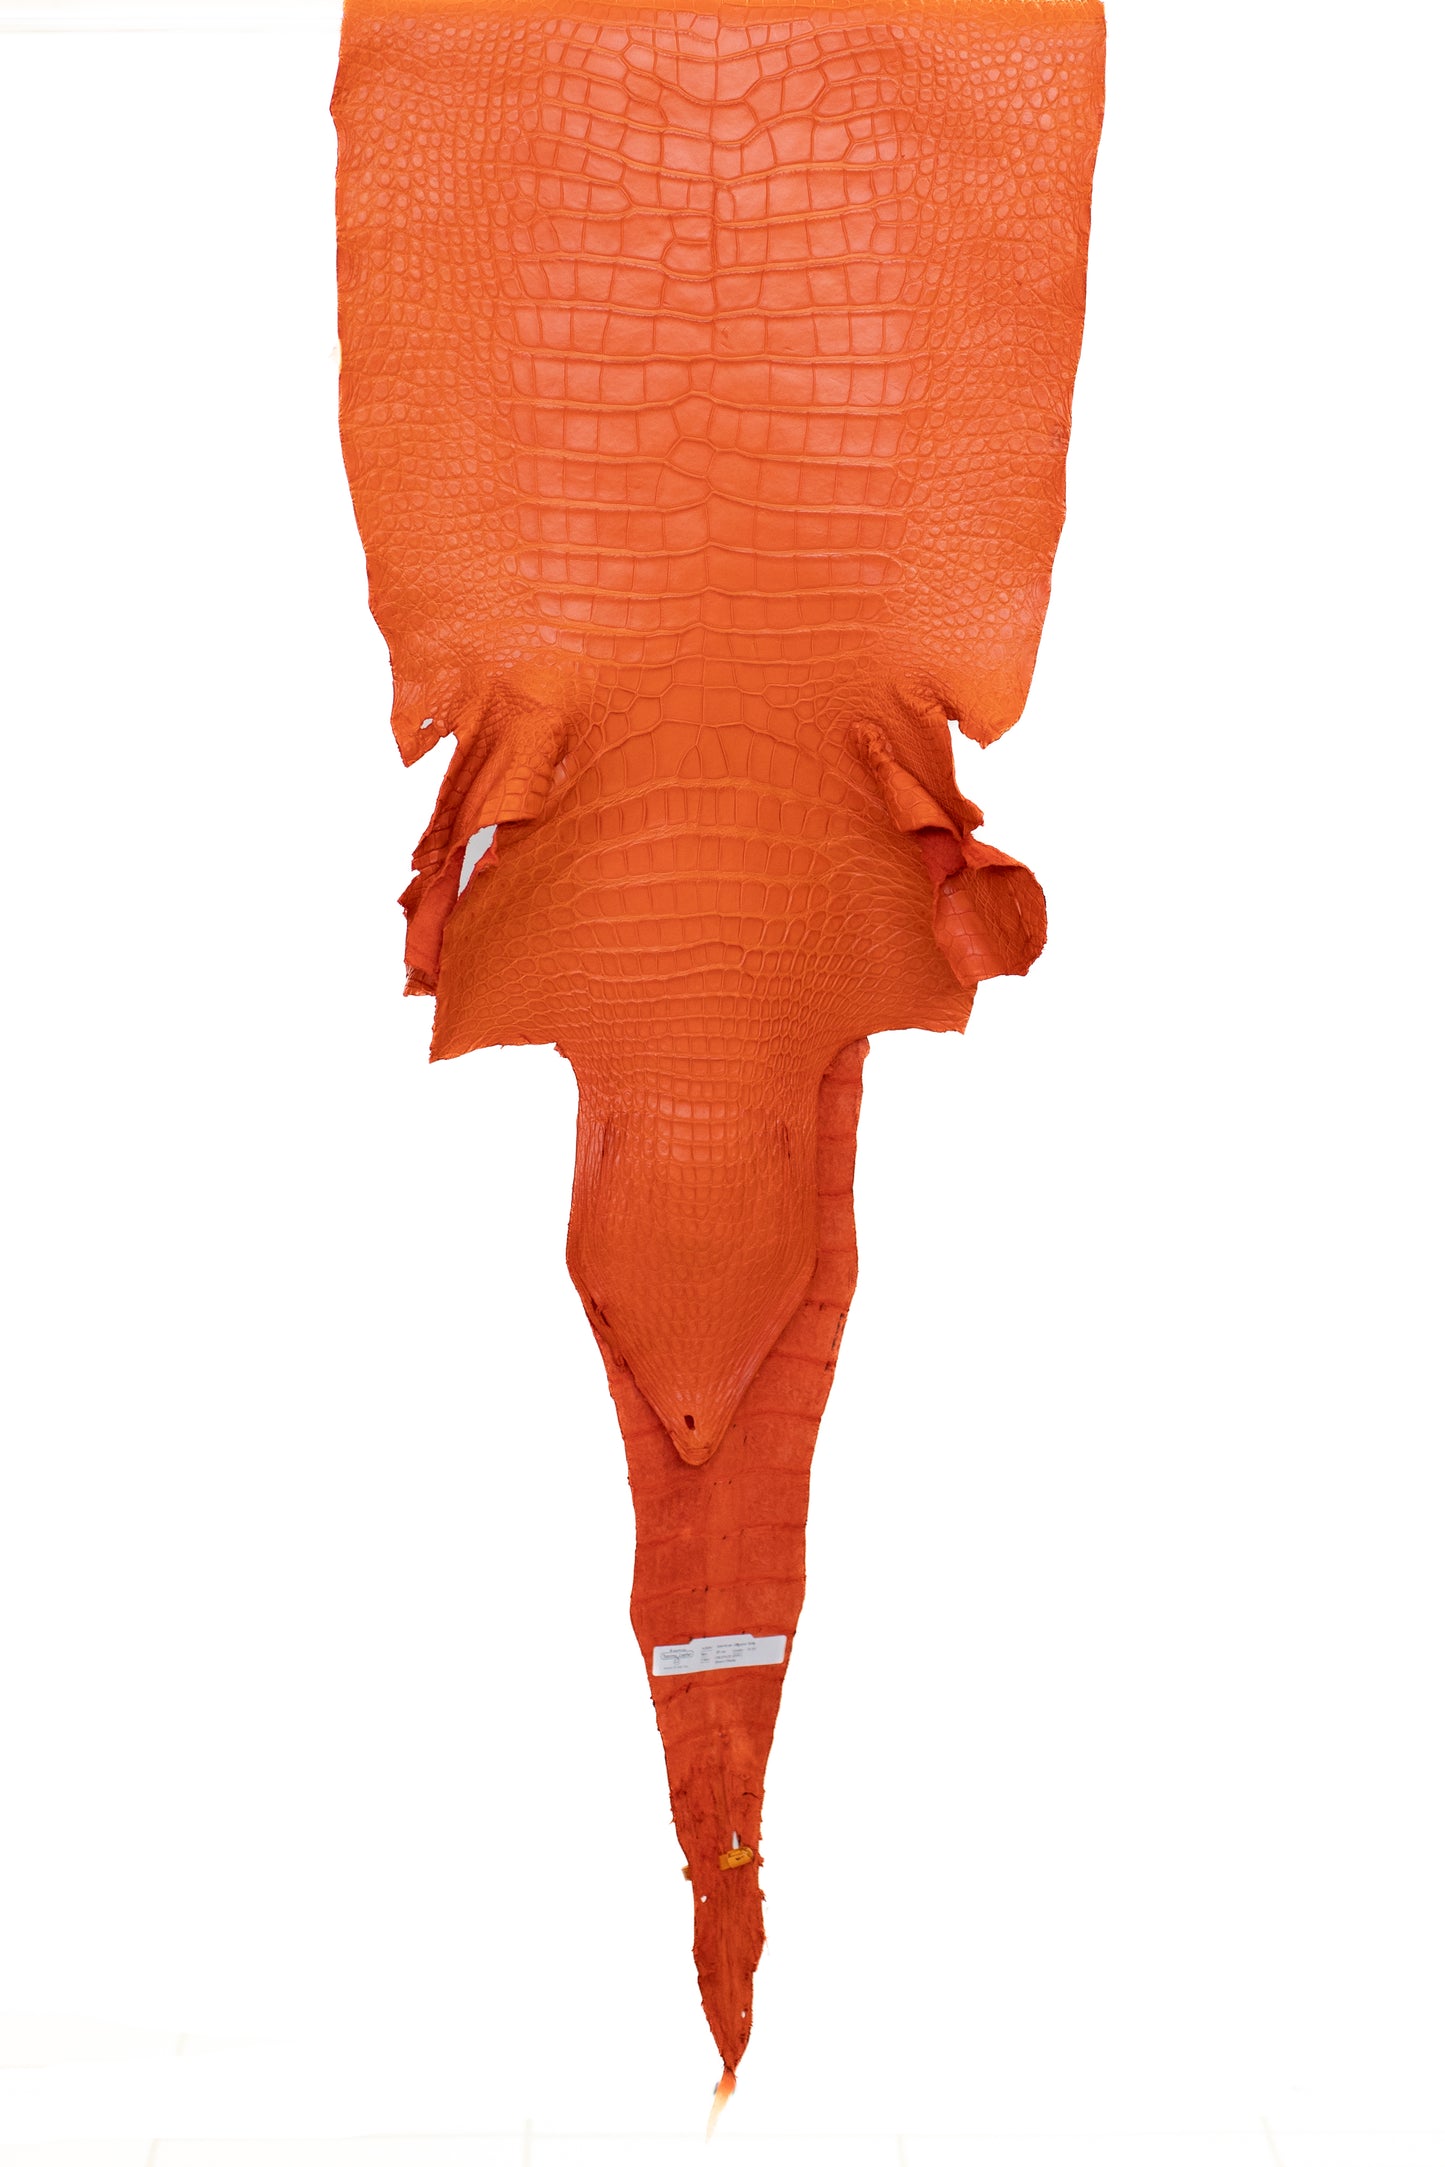 45 cm Grade 2/3 Orange Matte Wild American Alligator Leather - Tag: LA22-0013656